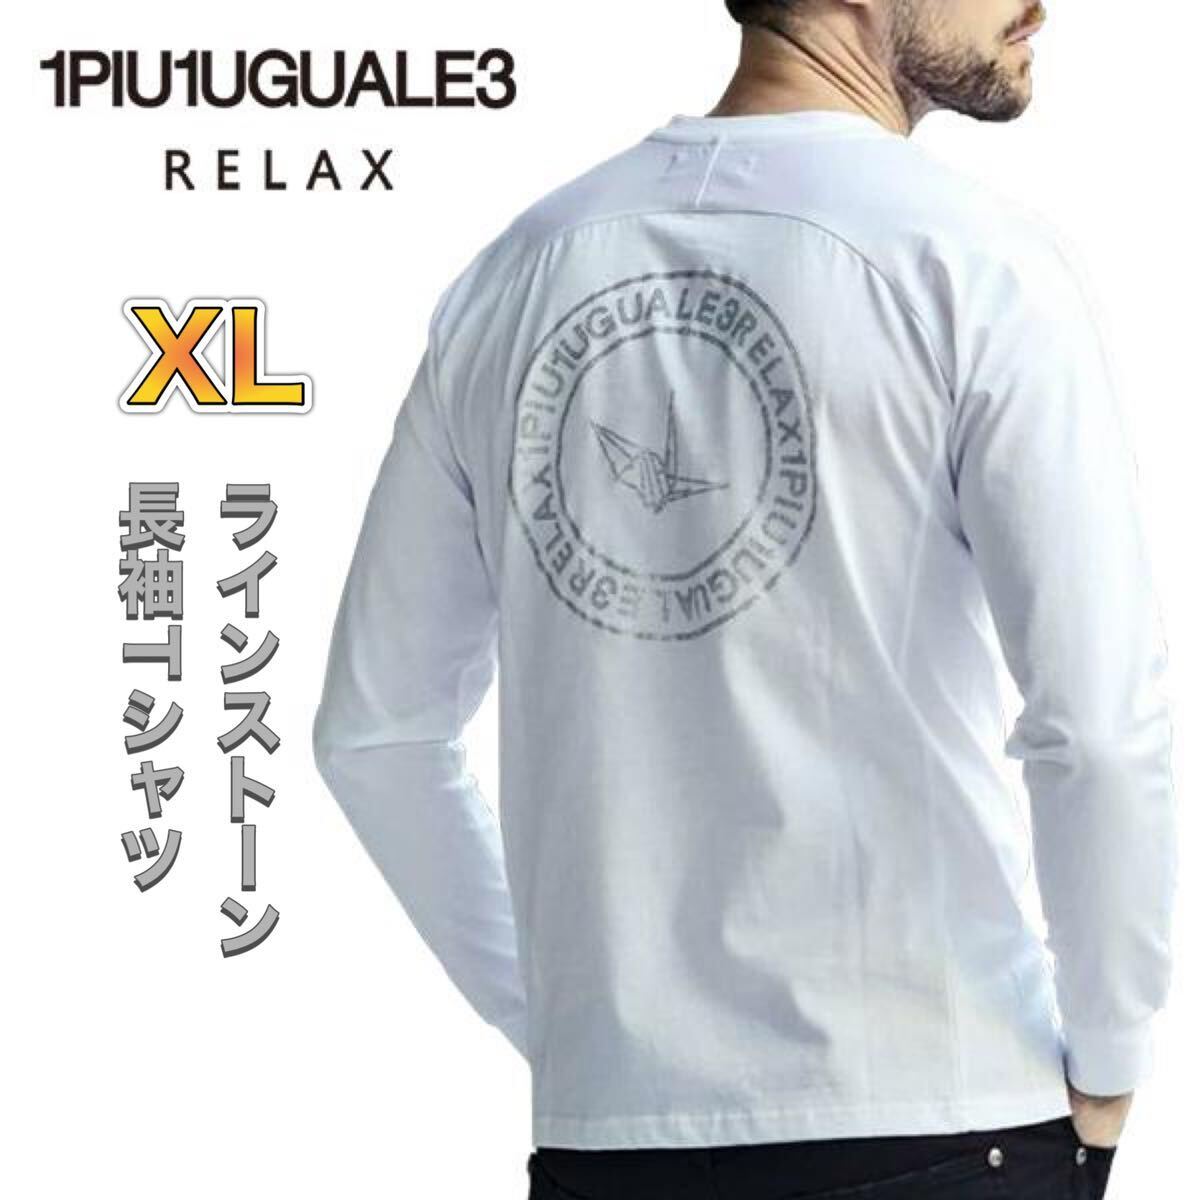 ウノピュウ ラインストーンロンT XLサイズ ホワイト 長袖Tシャツ クルーネック バックプリント ワンポイントロゴ 1PIU1UGUALE3 RELAX_画像1